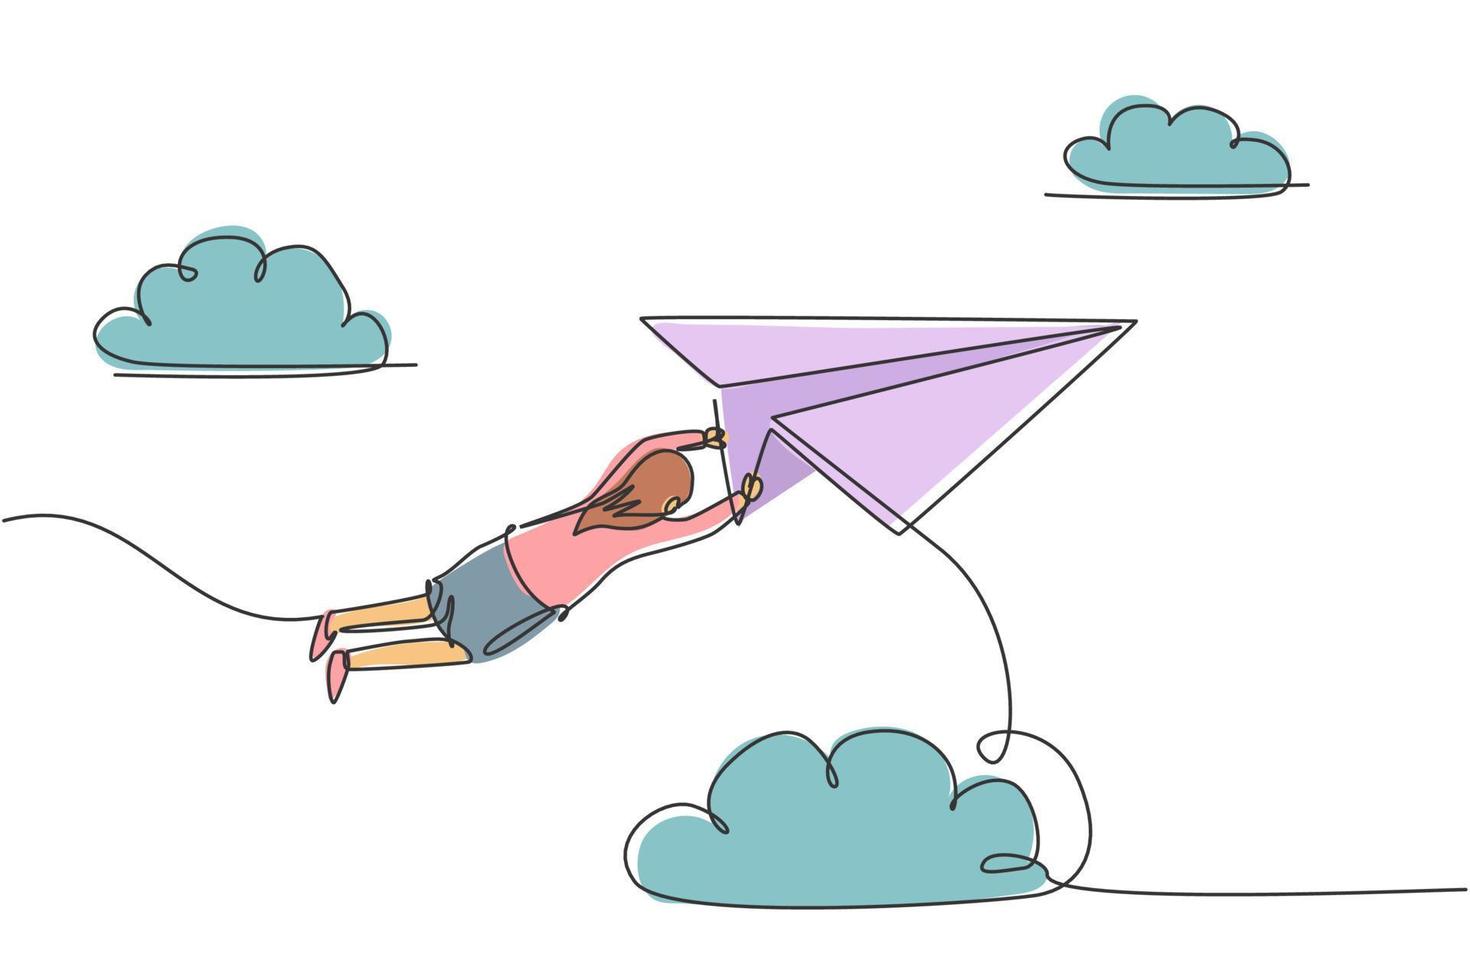 Kontinuierliche Zeichnung einer jungen Arbeiterin, die an einem fliegenden Papierflugzeug hängt. erfolgsgeschäftsführer. Metapher minimalistisches Konzept. trendige Single-Line-Draw-Design-Vektorgrafik-Illustration vektor